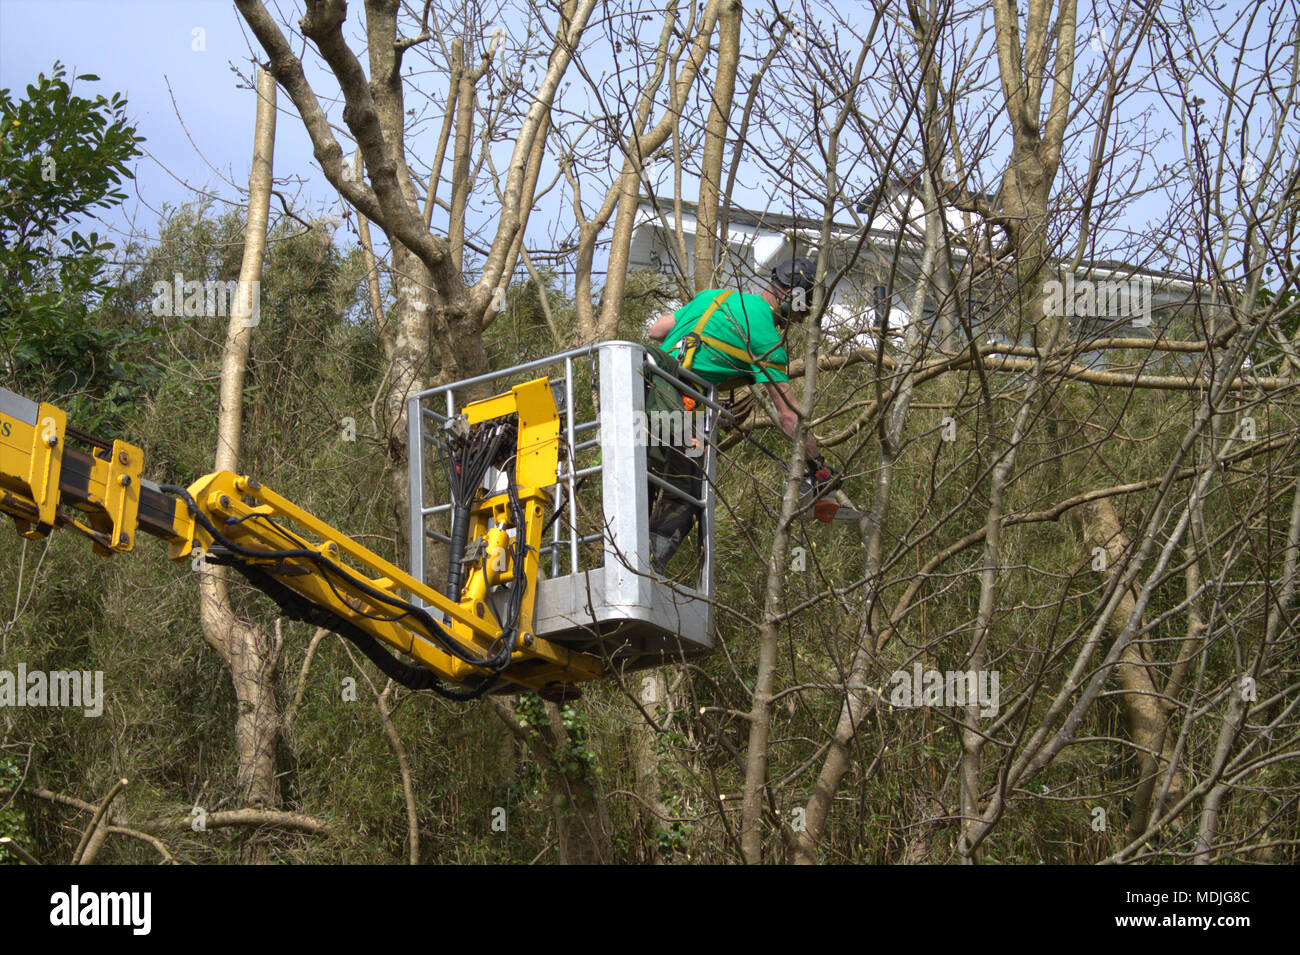 Leñadores, cirujano de árbol en lo alto de una plataforma móvil con una motosierra,para podar atrás del árbol sobredimensionado, vistiendo la ropa de protección correcto. Foto de stock